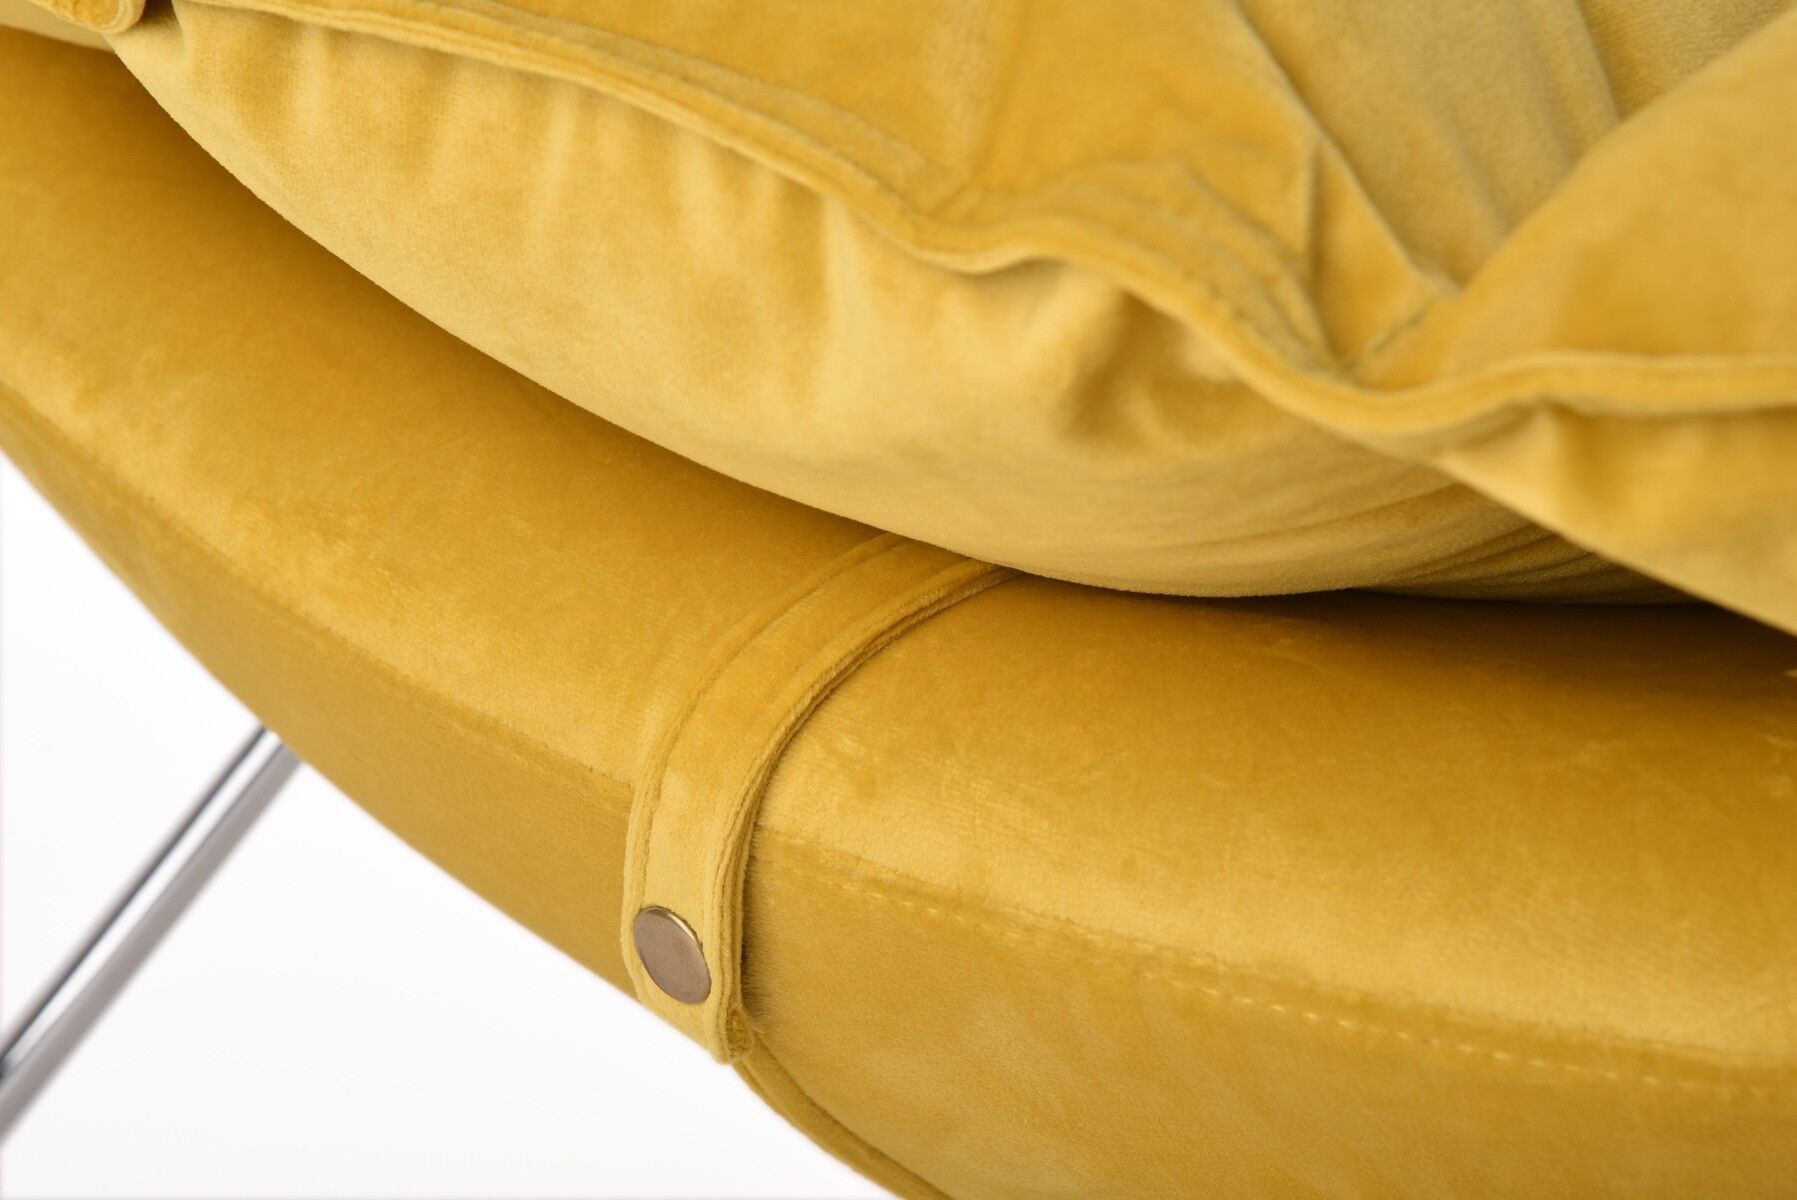 Fotel bujany Lieslie żółty 90x102x85 cm